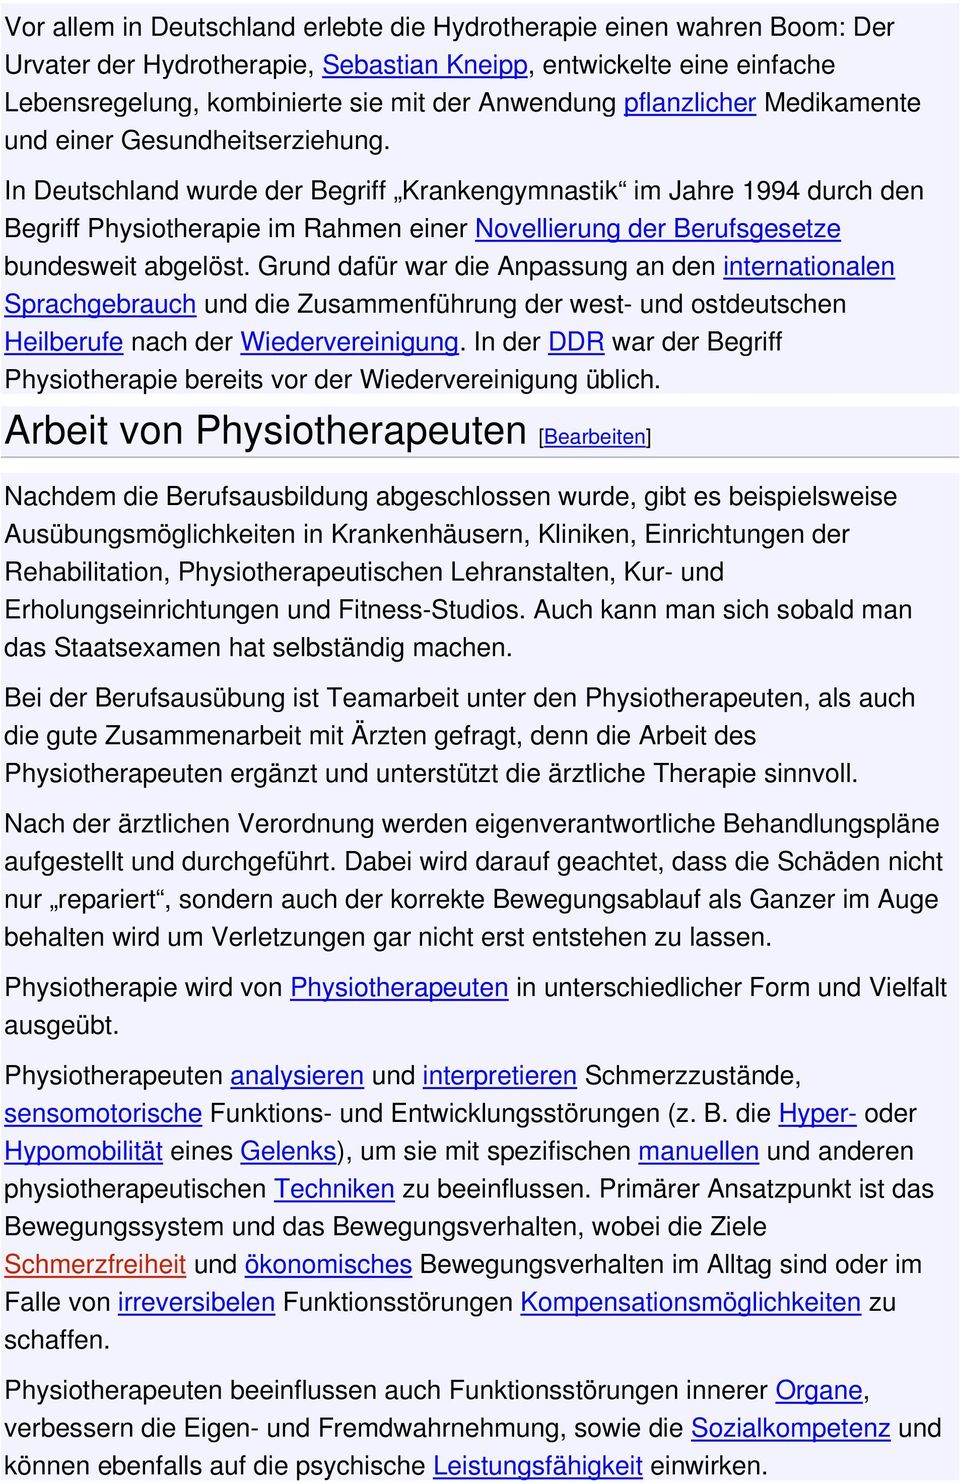 In Deutschland wurde der Begriff Krankengymnastik im Jahre 1994 durch den Begriff Physiotherapie im Rahmen einer Novellierung der Berufsgesetze bundesweit abgelöst.